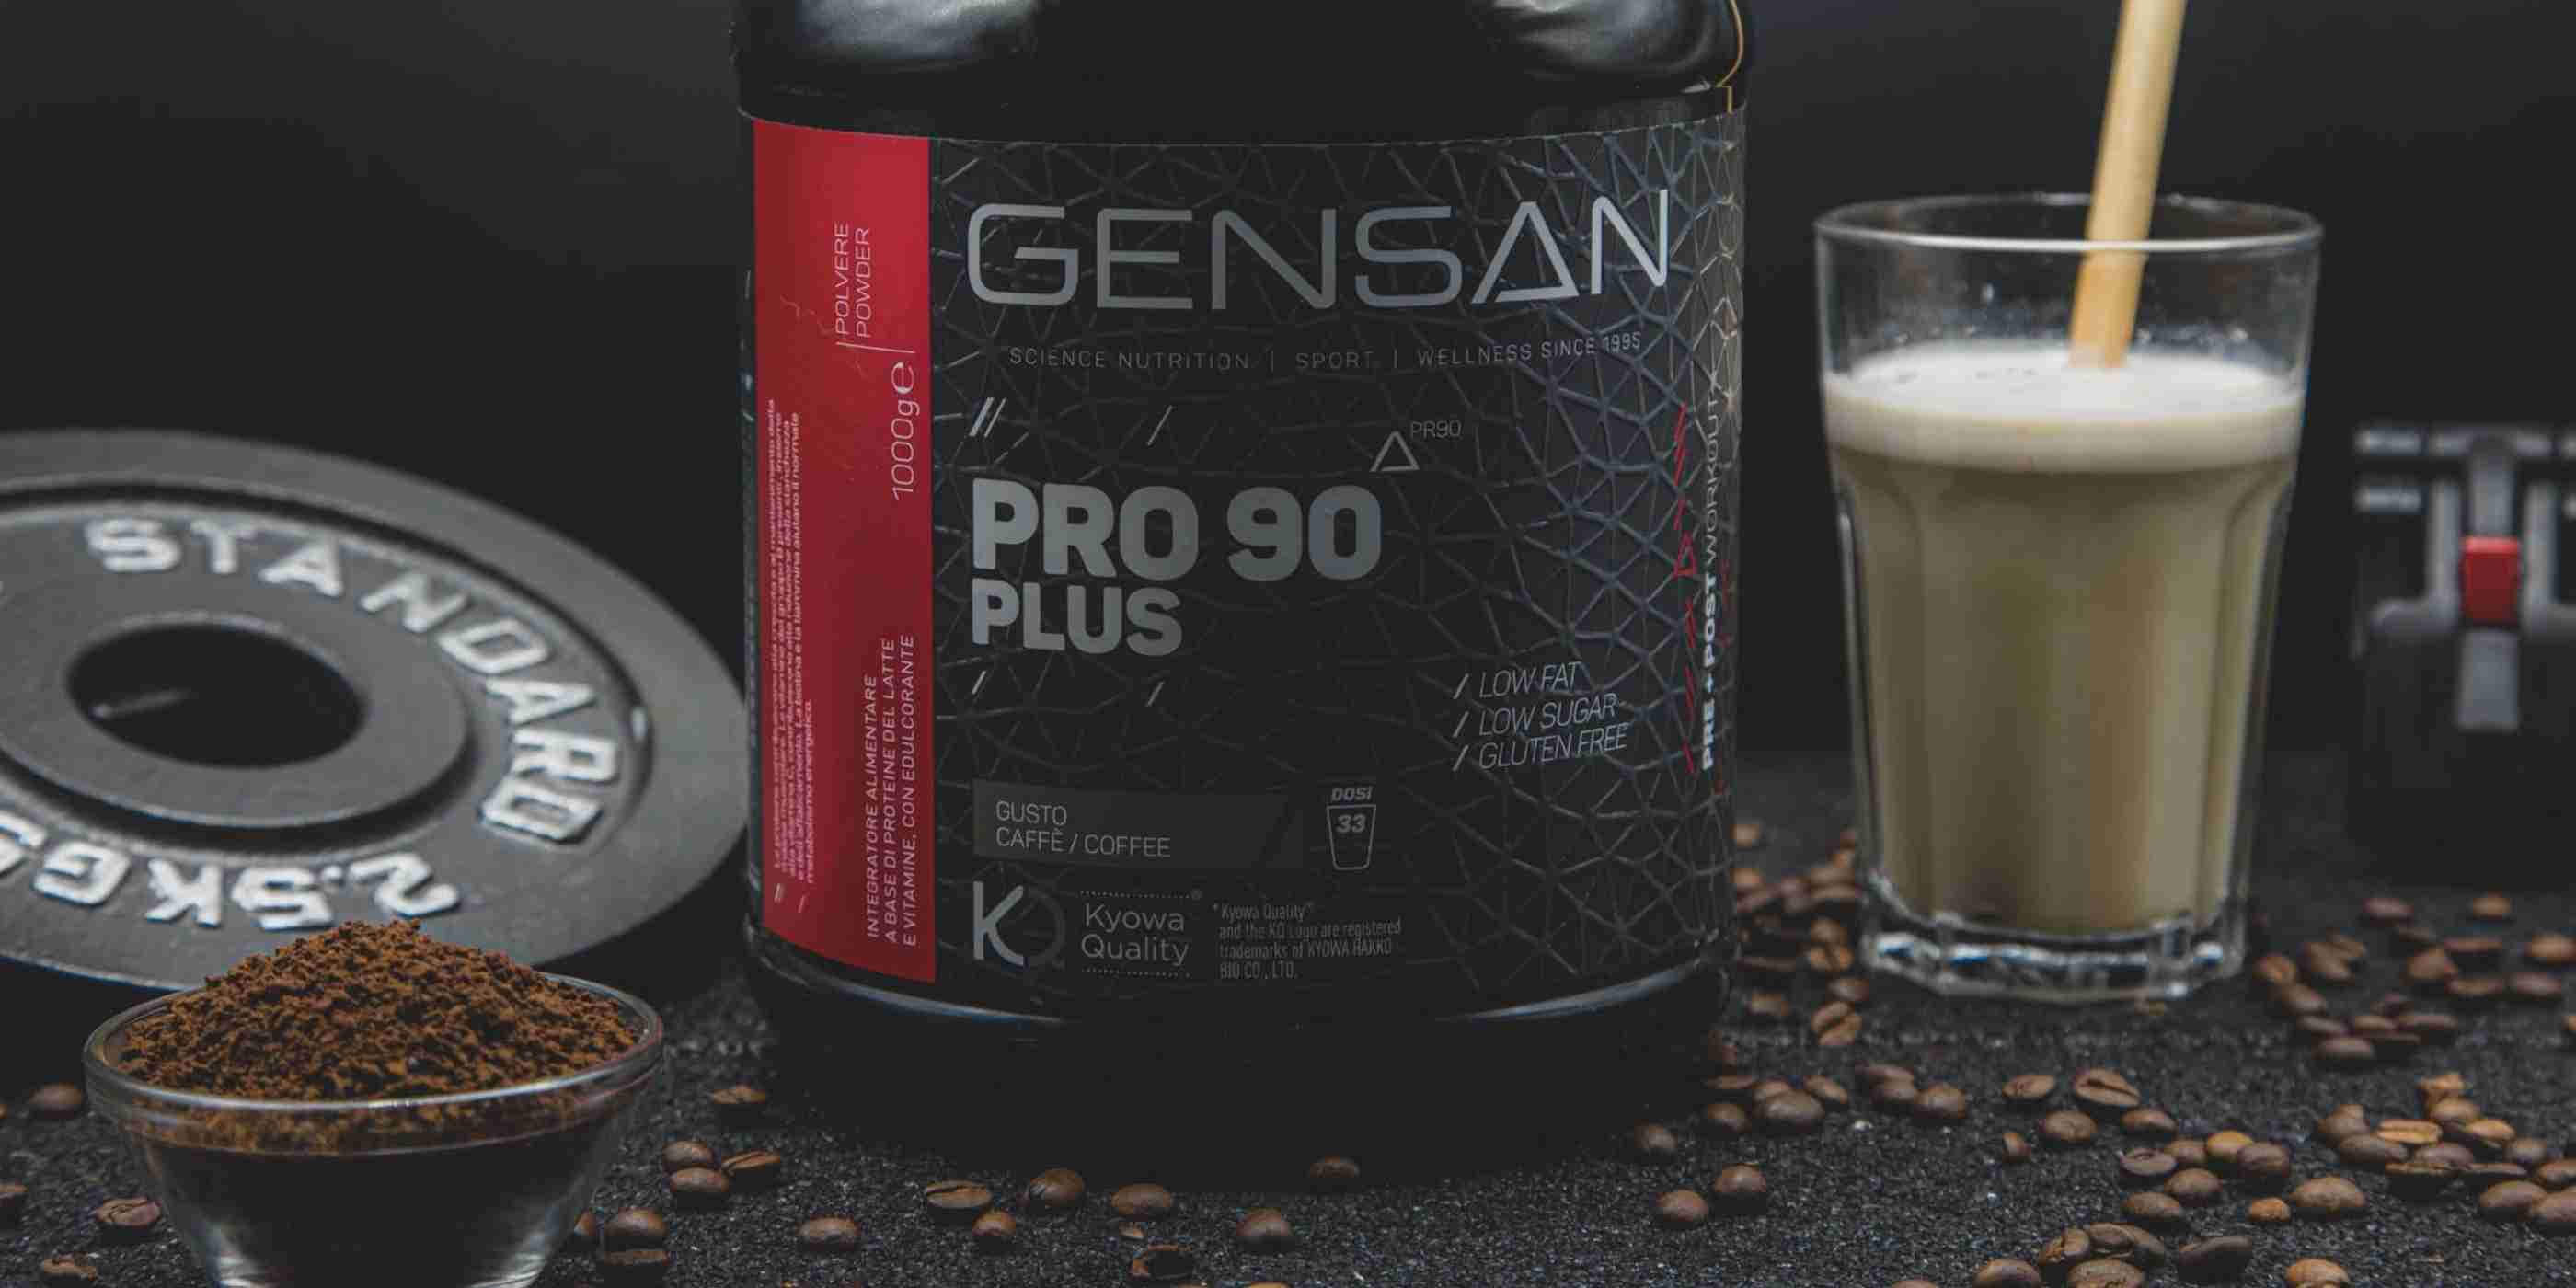 Proteine in polvere Pro 90 Plus Gensan